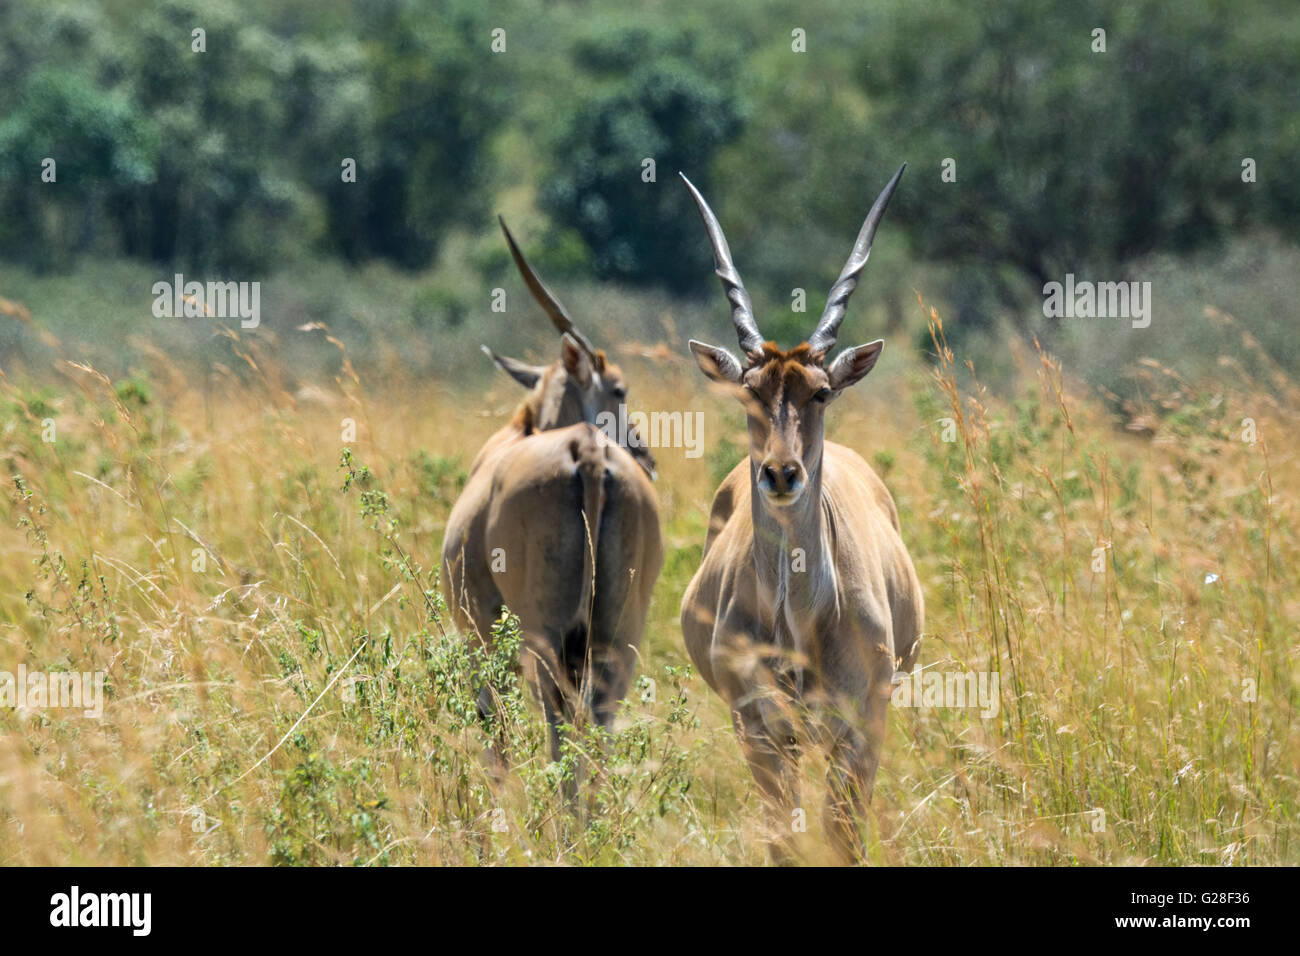 Two adult, wild Elands, Tragelaphus gryx, Masai Mara National Reserve, Kenya, East Africa Stock Photo